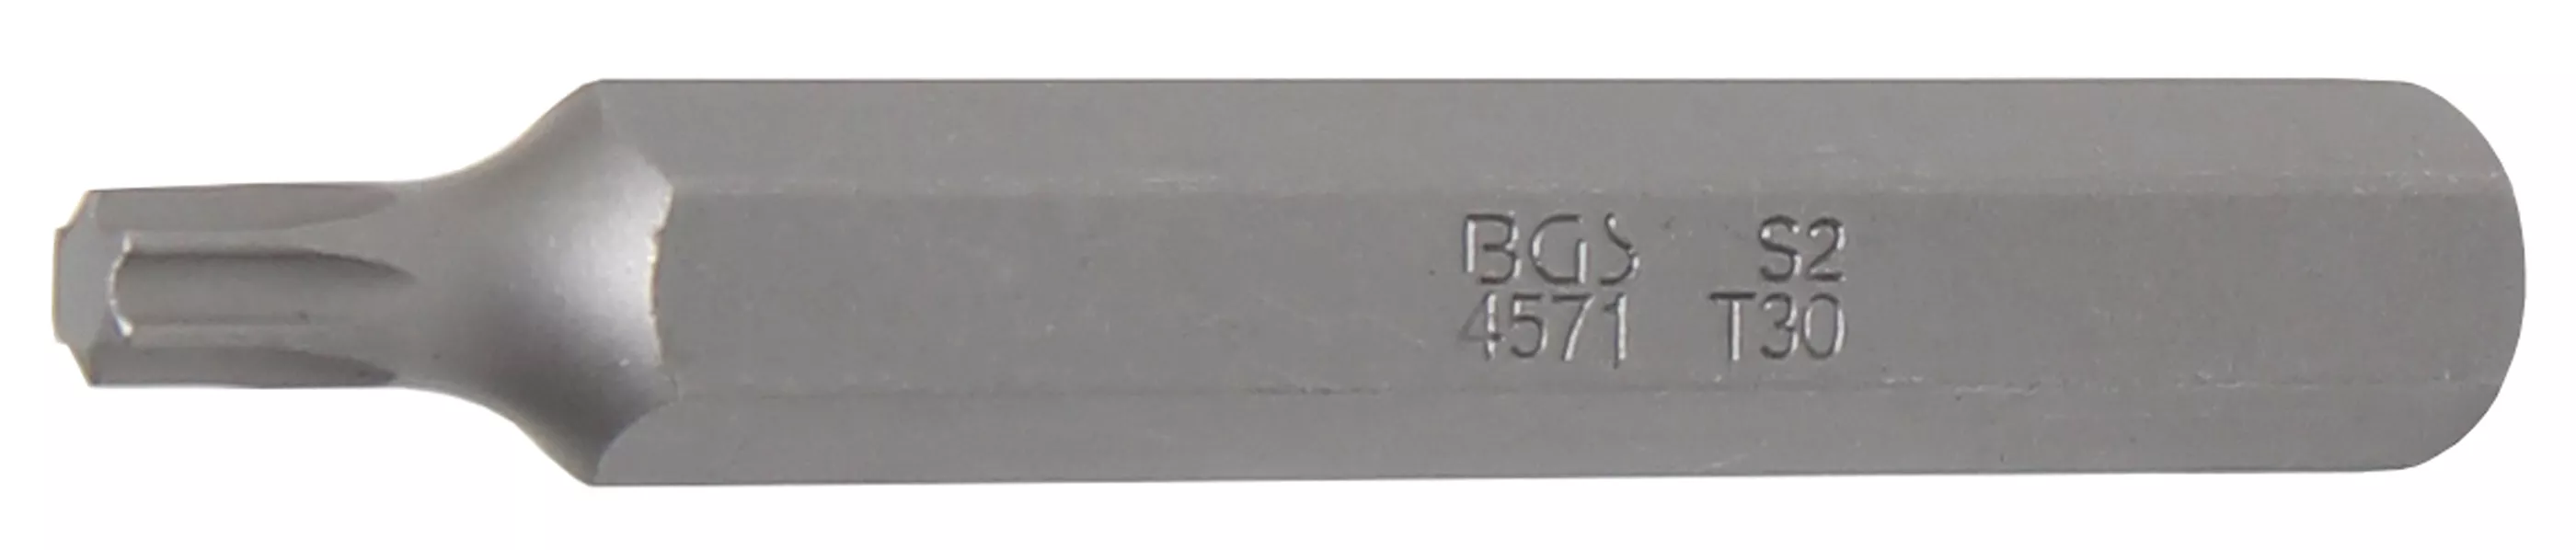 Bit, Torx, T30, 75 mm - B4571